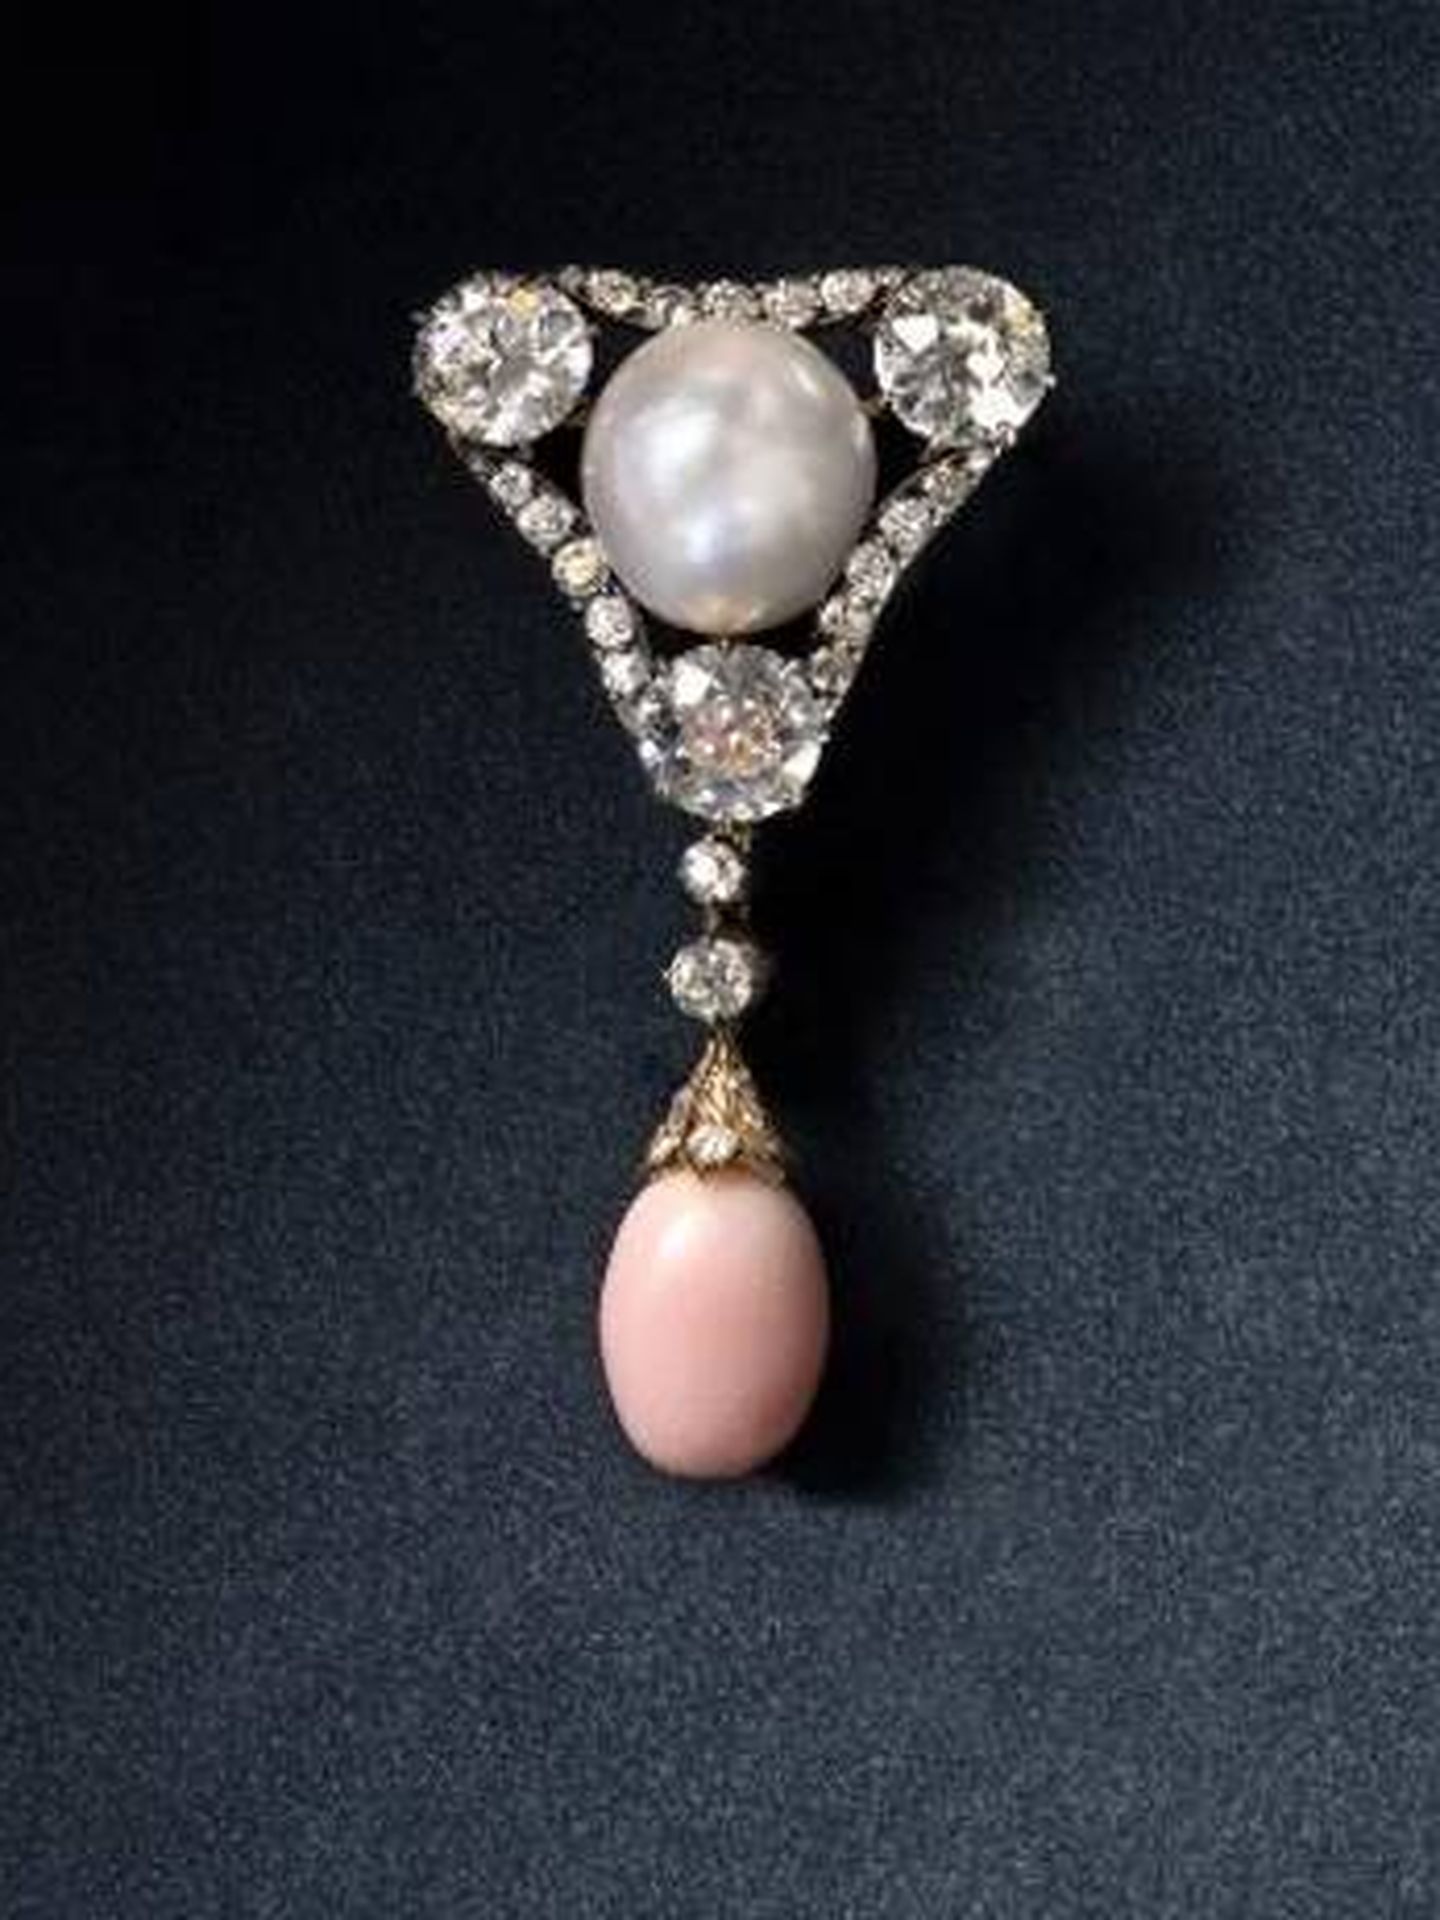 El broche de perlas y diamantes. (Museo de Amalienborg)